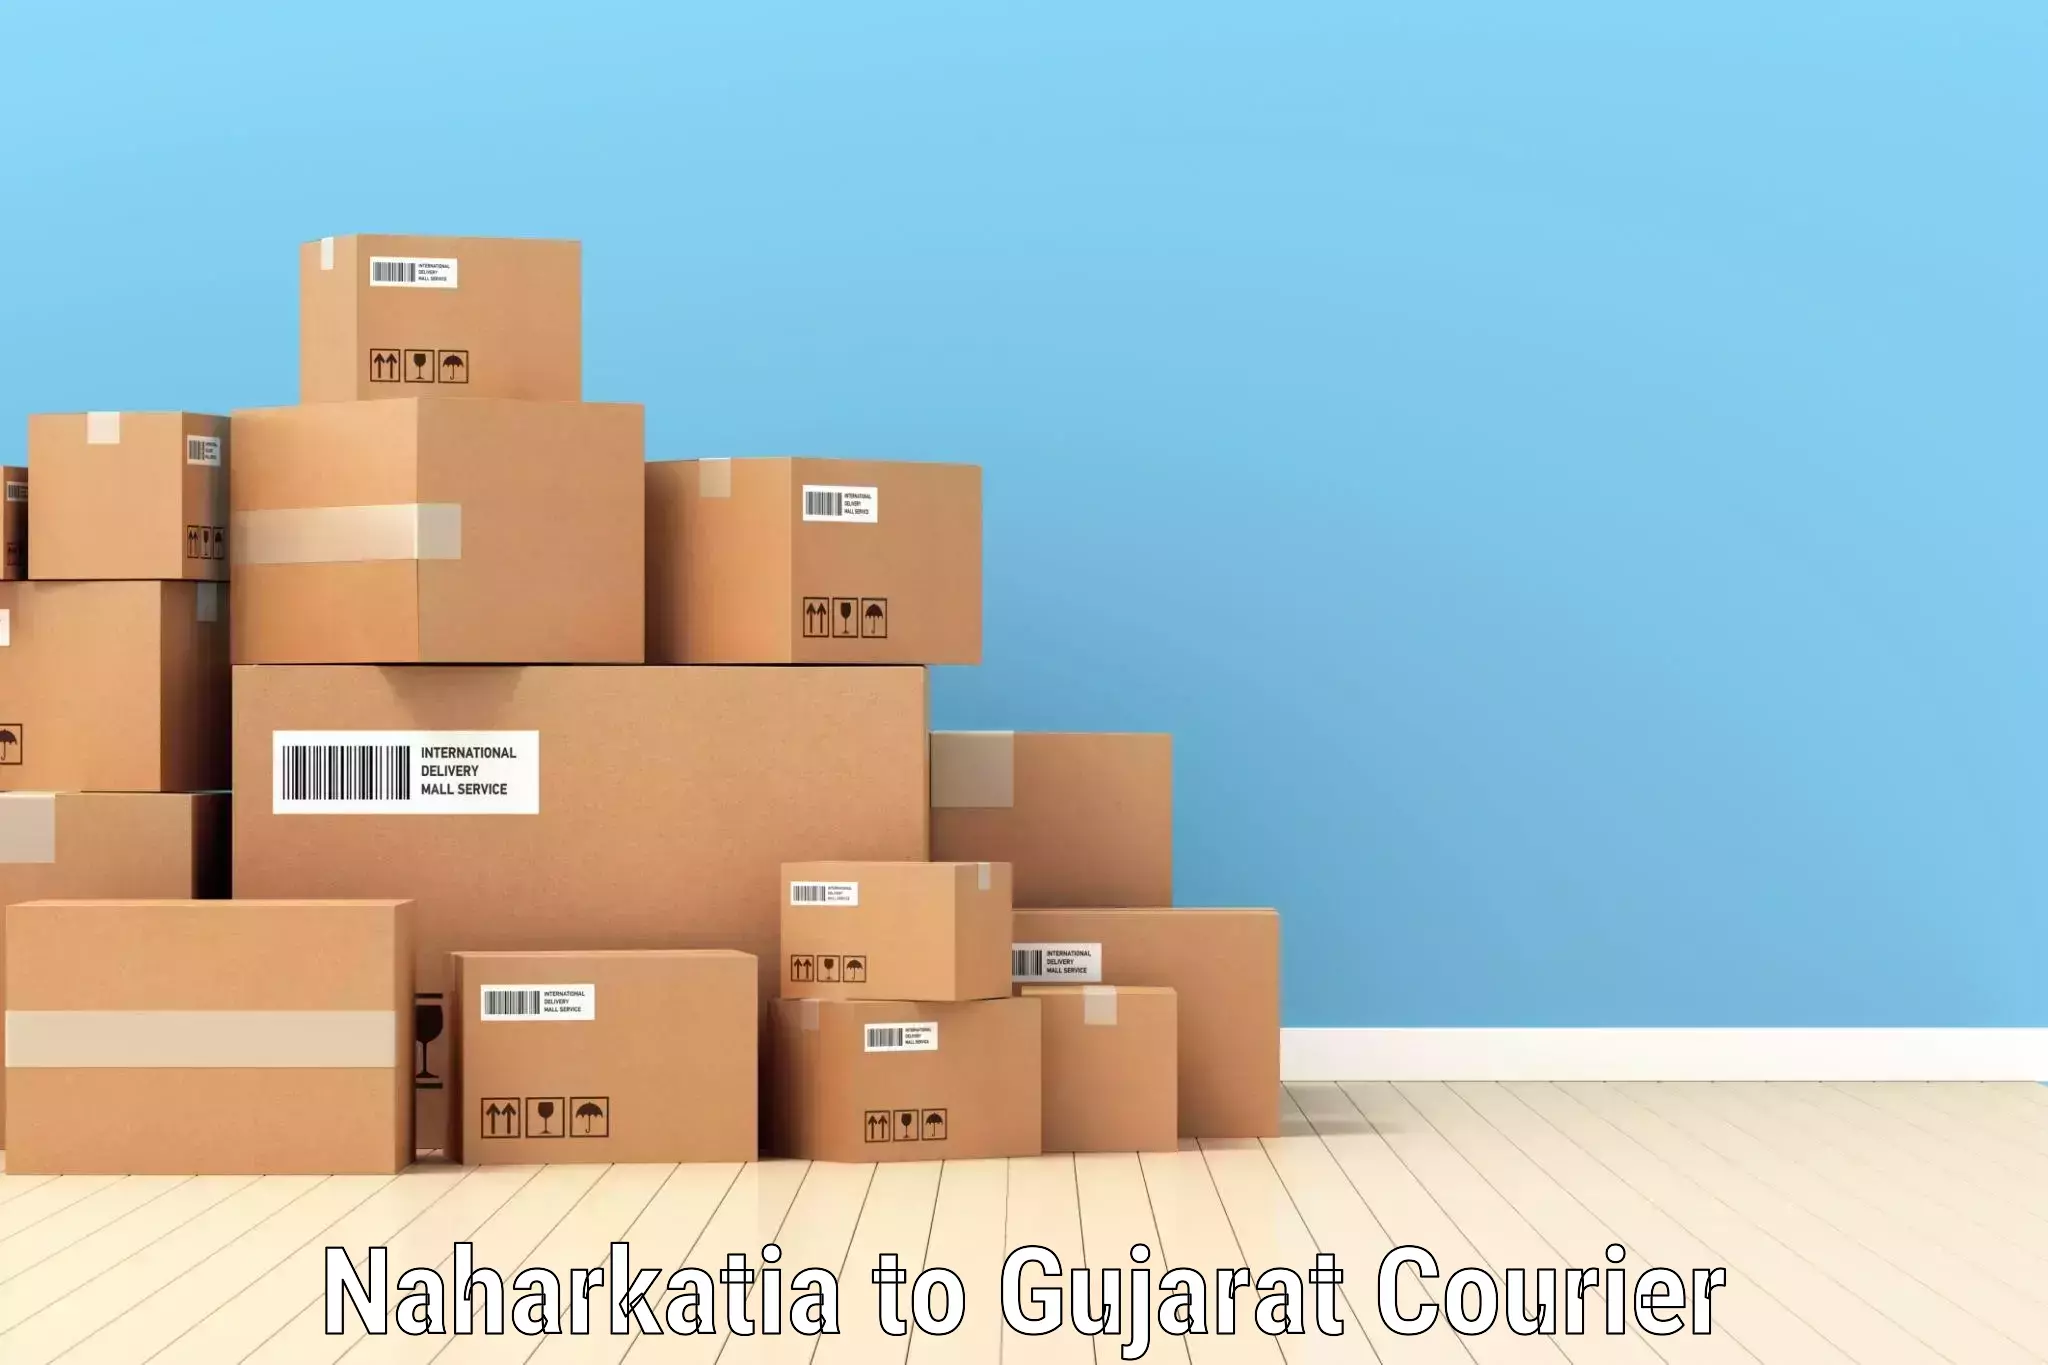 Comprehensive shipping network Naharkatia to Vyara